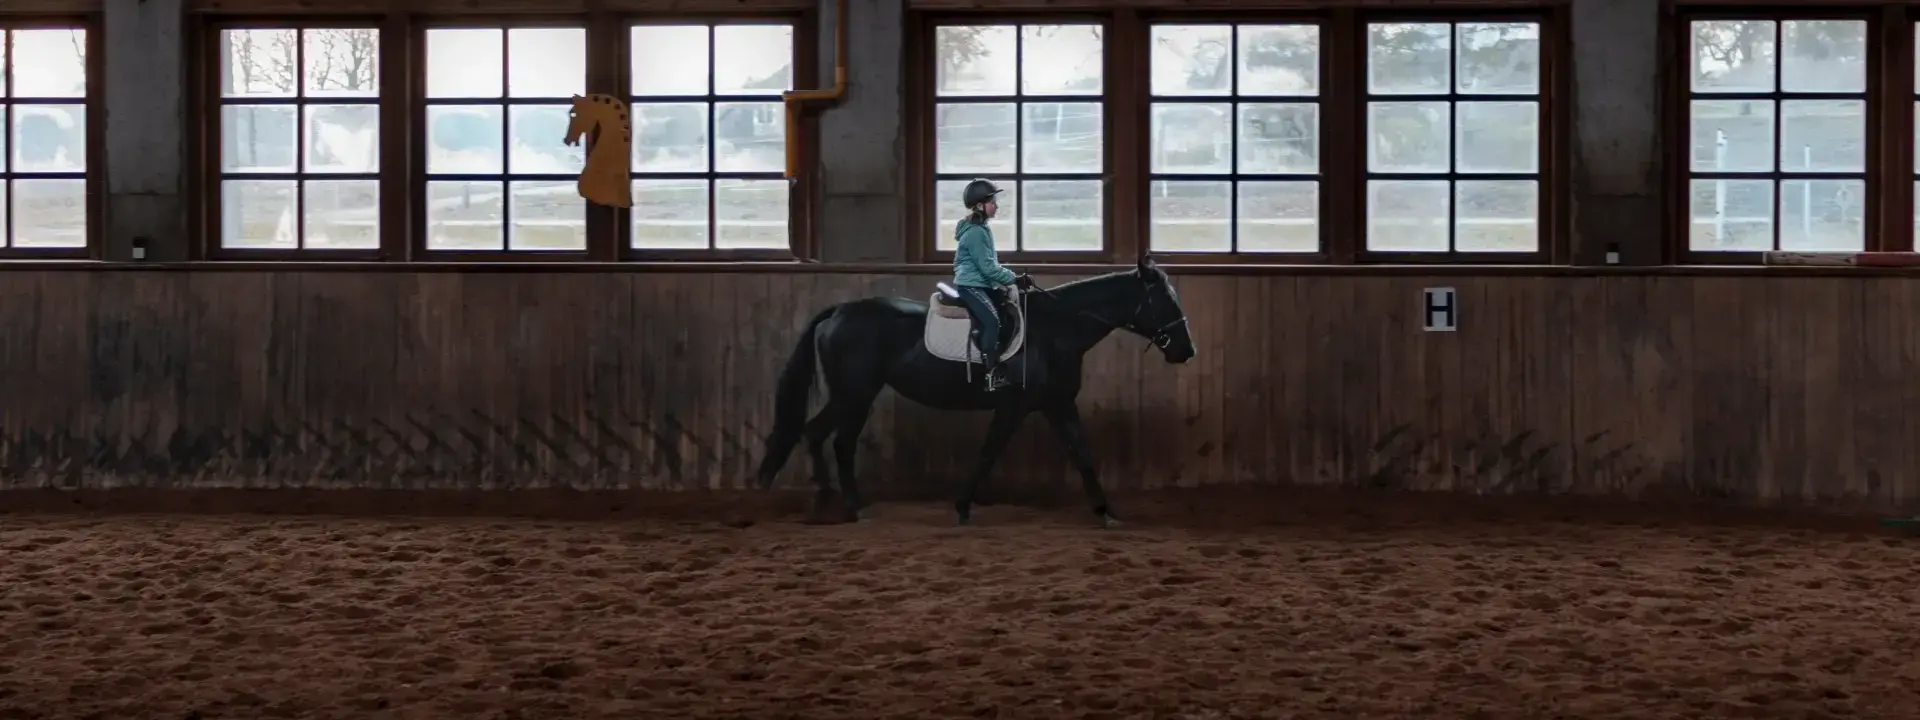 Horse Trainer Staff in Denmark